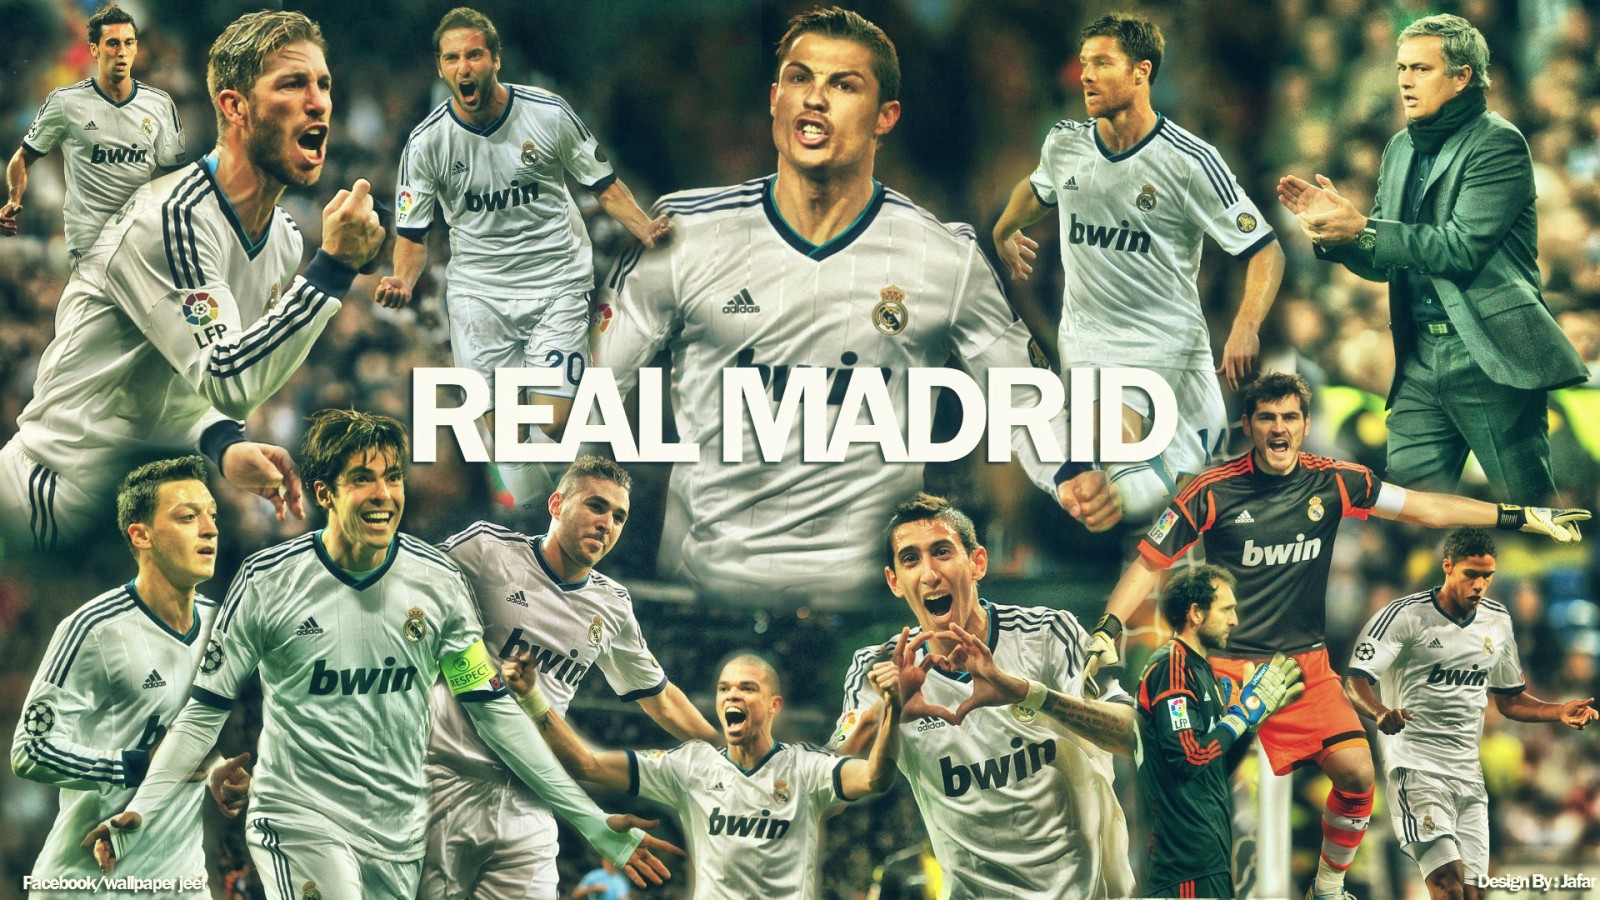 Jadwal Real Madrid Di LA LIGA Spanyol Lengkap 2013 2014 Subhan